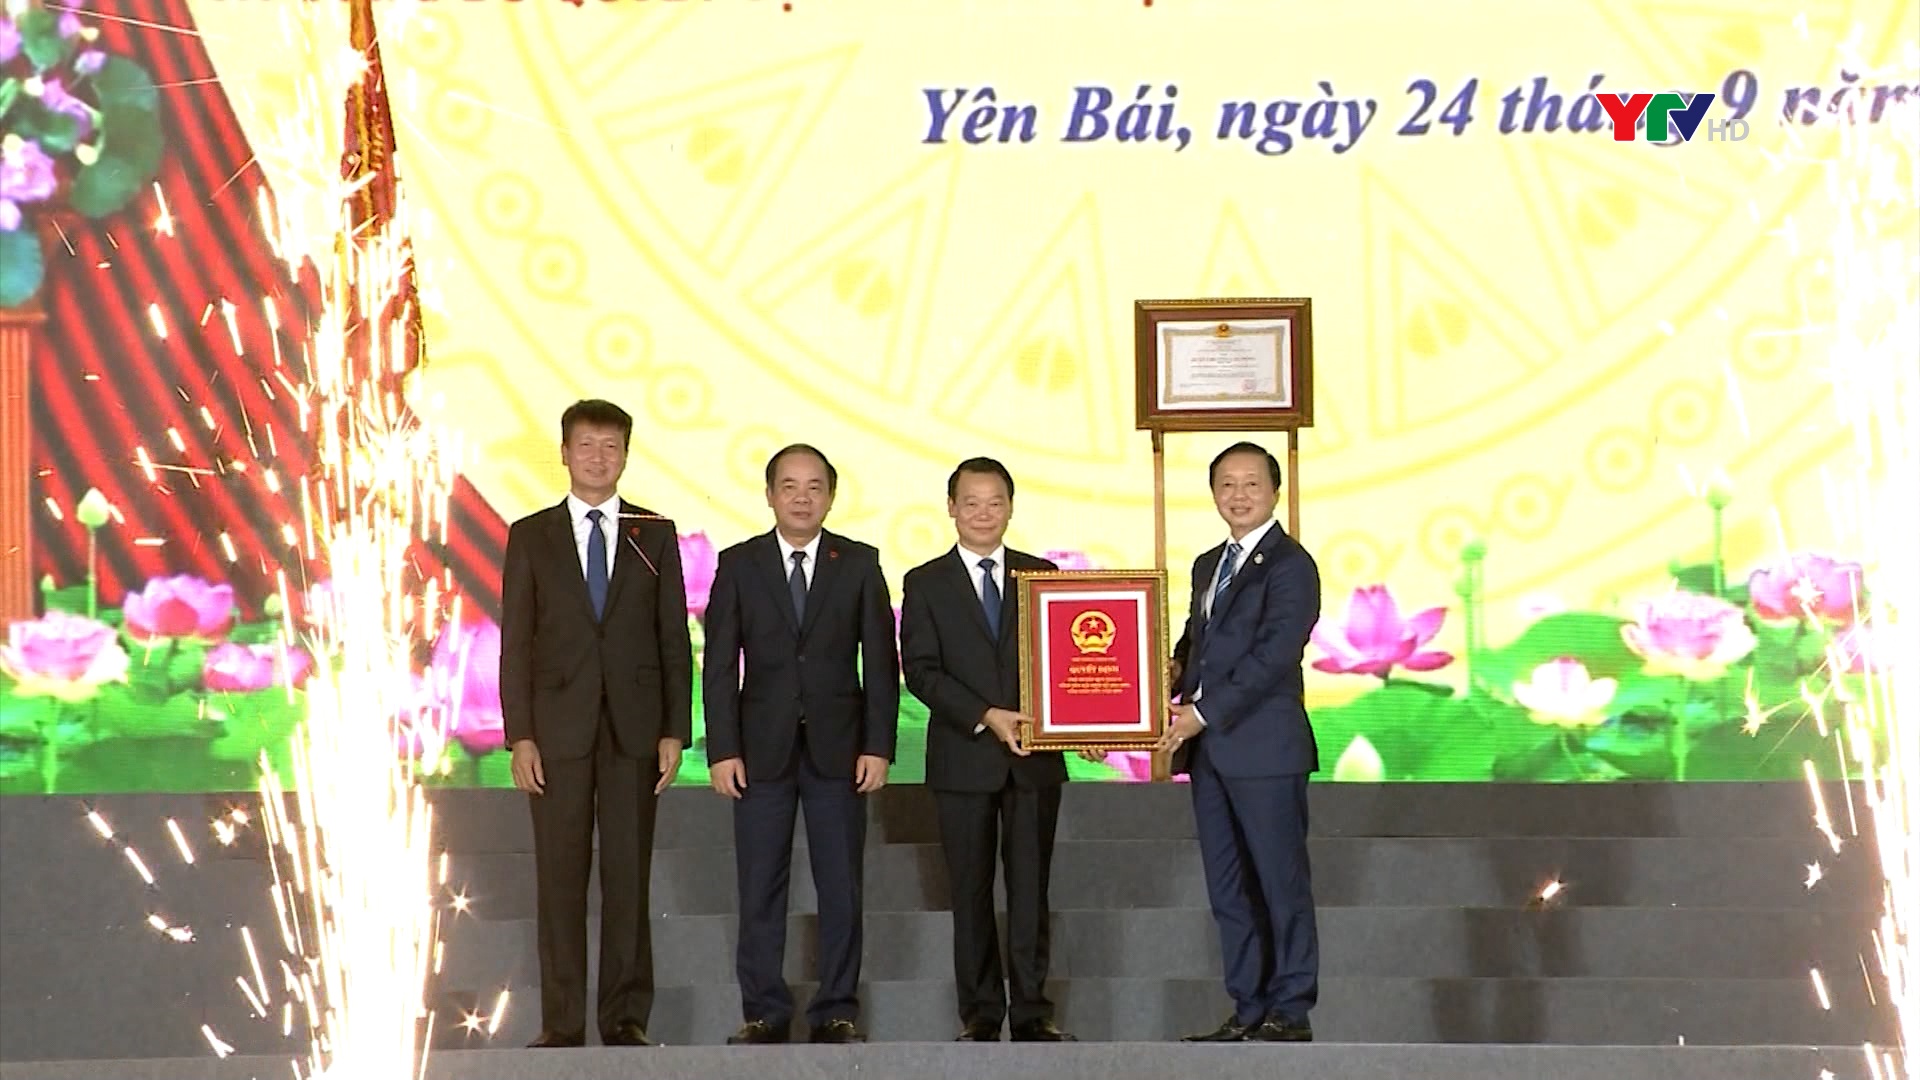 Lễ công bố Quy hoạch tỉnh Yên Bái và Quyết định của Thủ tướng Chính phủ công nhận thành phố Yên Bái là đô thị loại 2